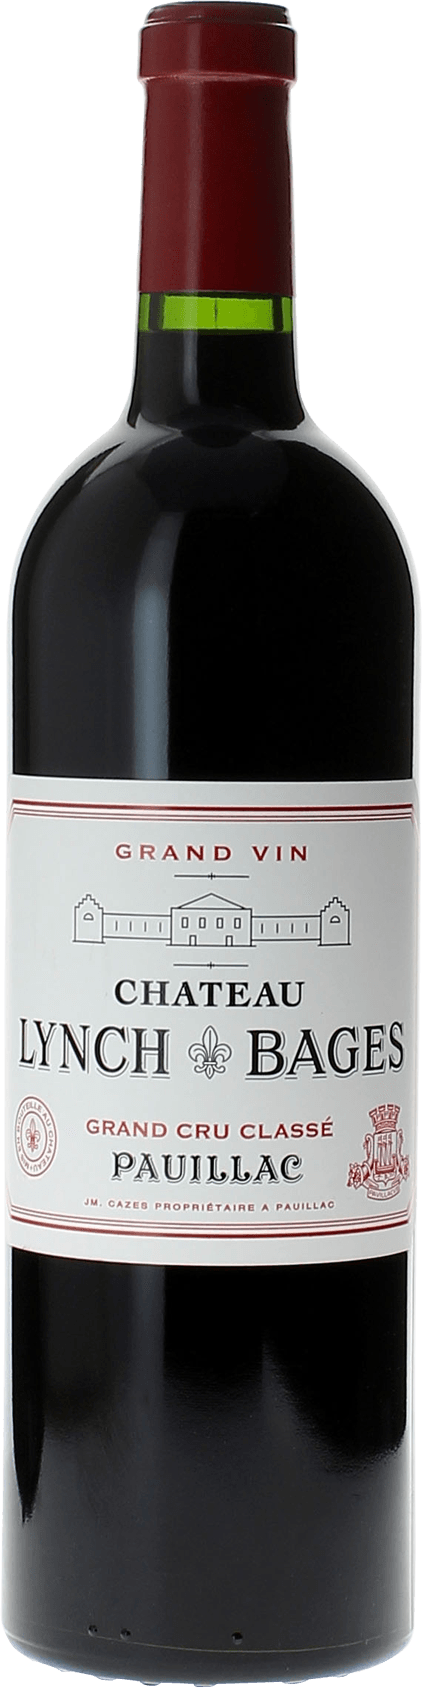 Lynch bages 1995  Pauillac, Bordeaux rouge